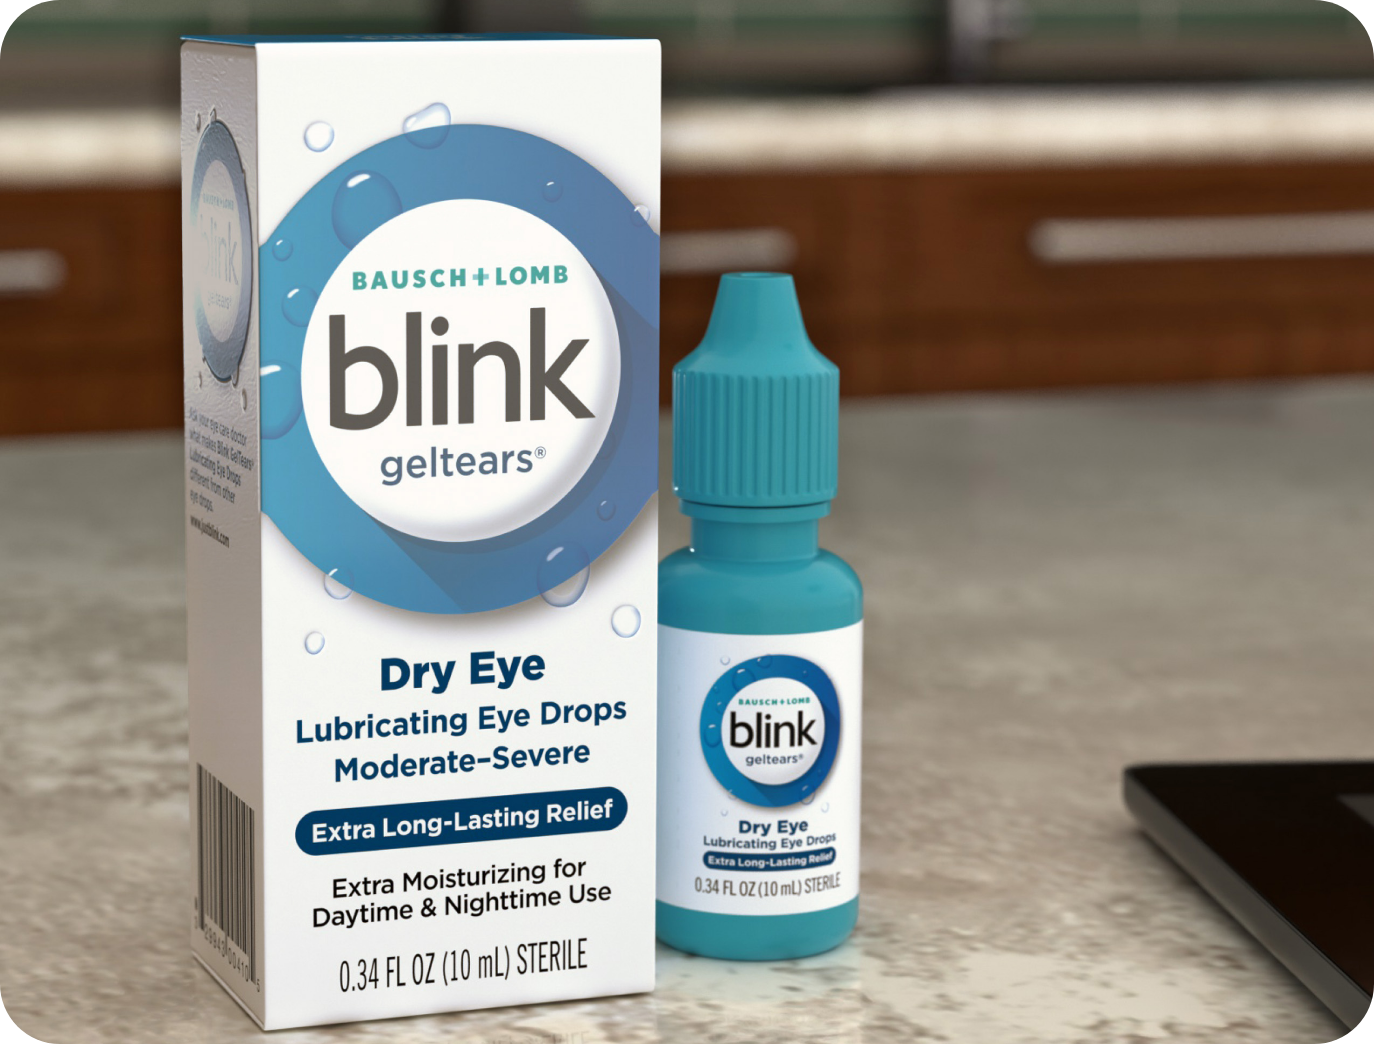 Blink GelTears Lubricating Eye Drops bottle and carton on a desk